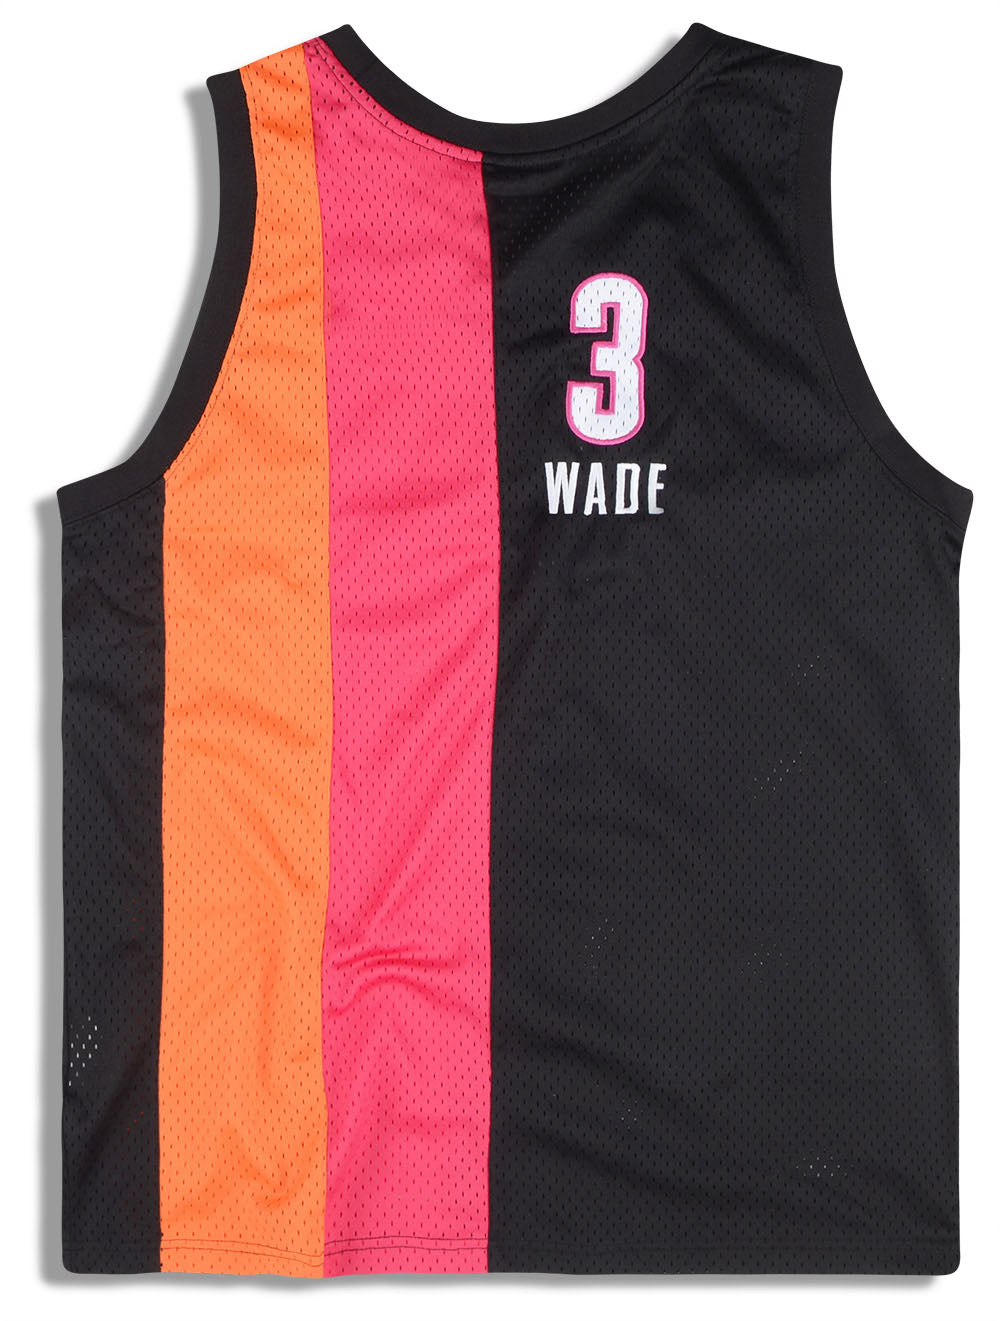 LeBron James Miami Heat NBA Hardwood Classics Floridians Adidas Jersey  Medium